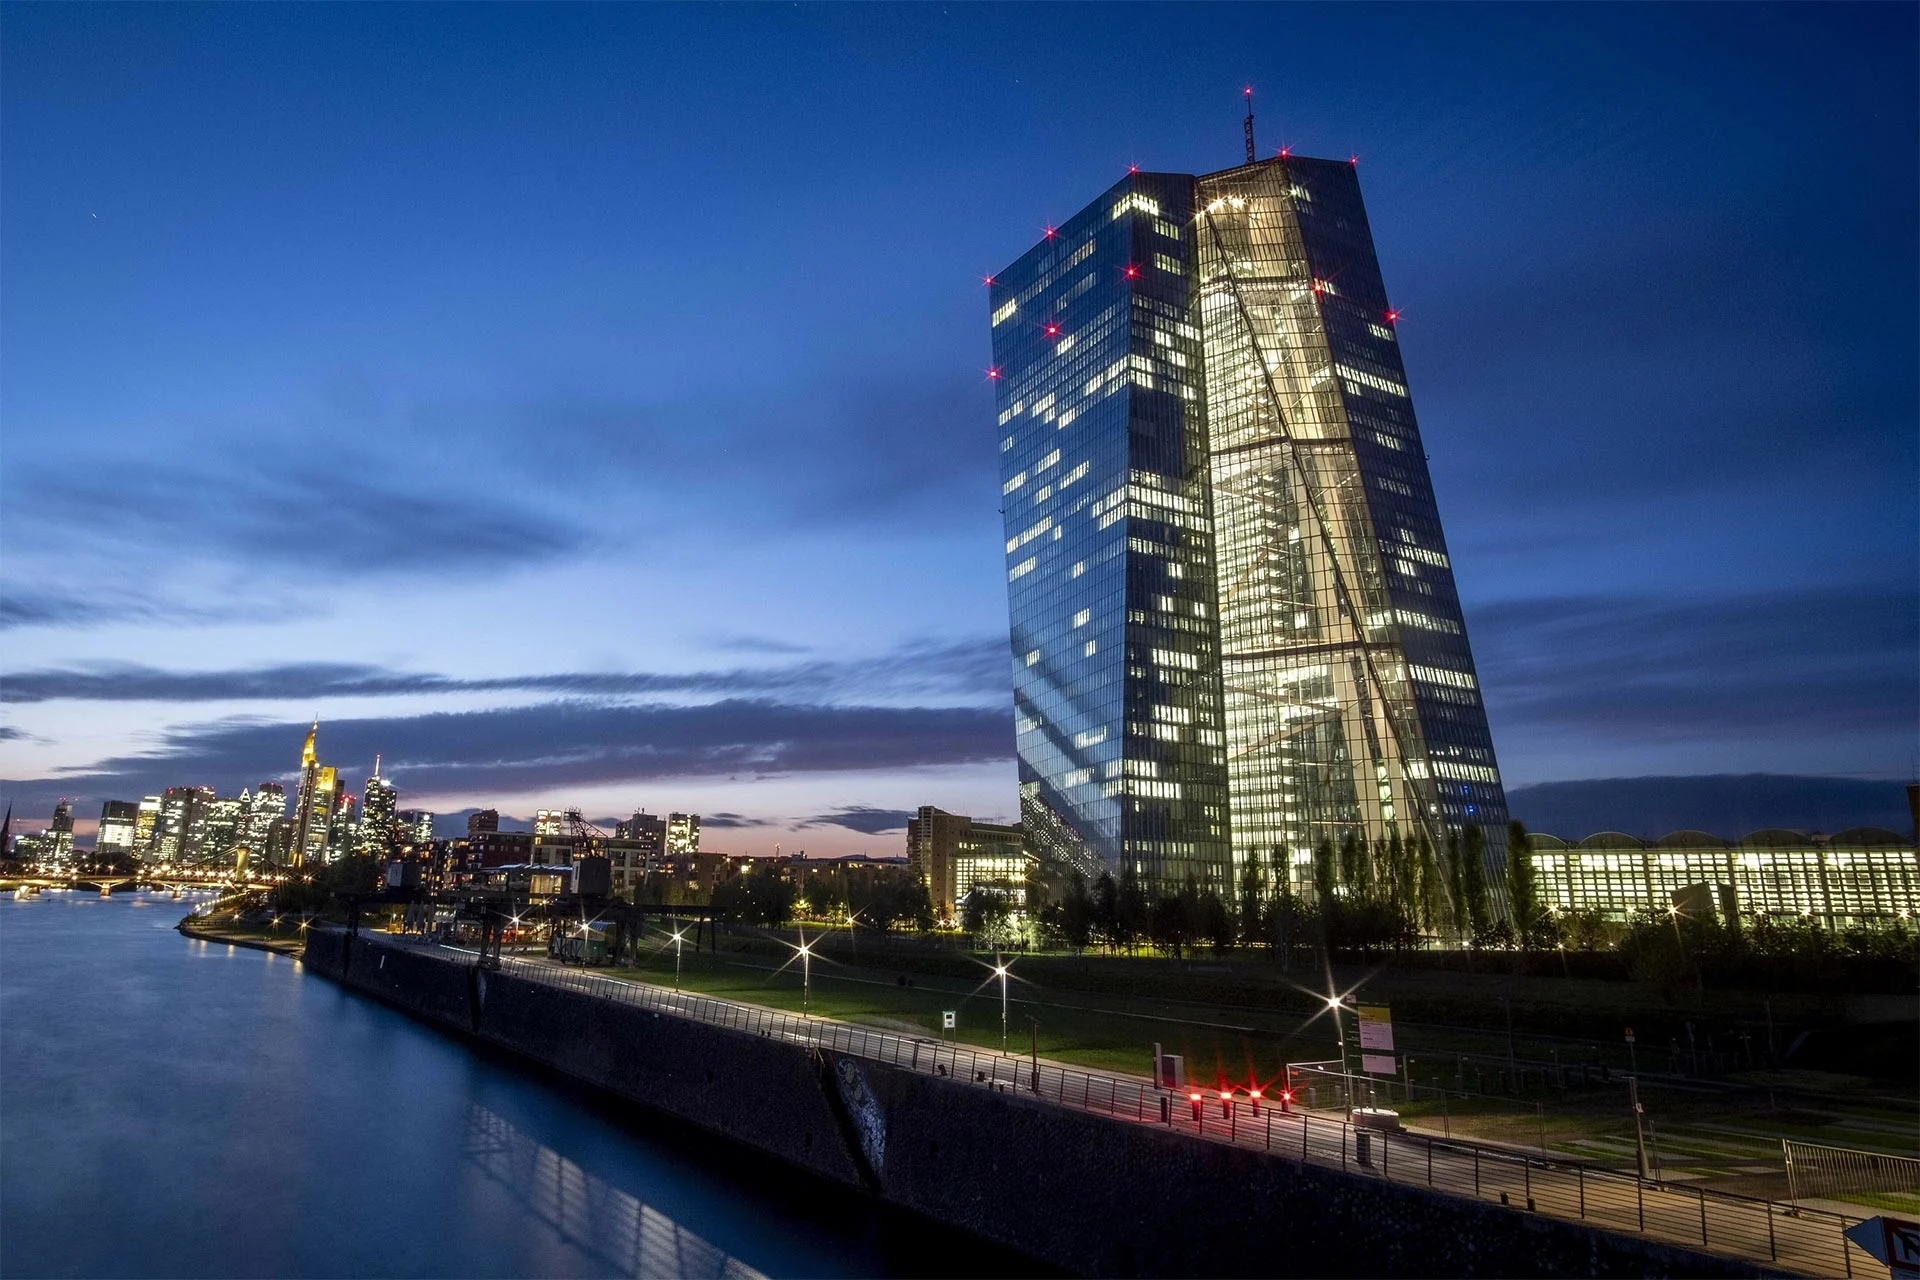 European Banks Gain Investor Interest Despite Challenges